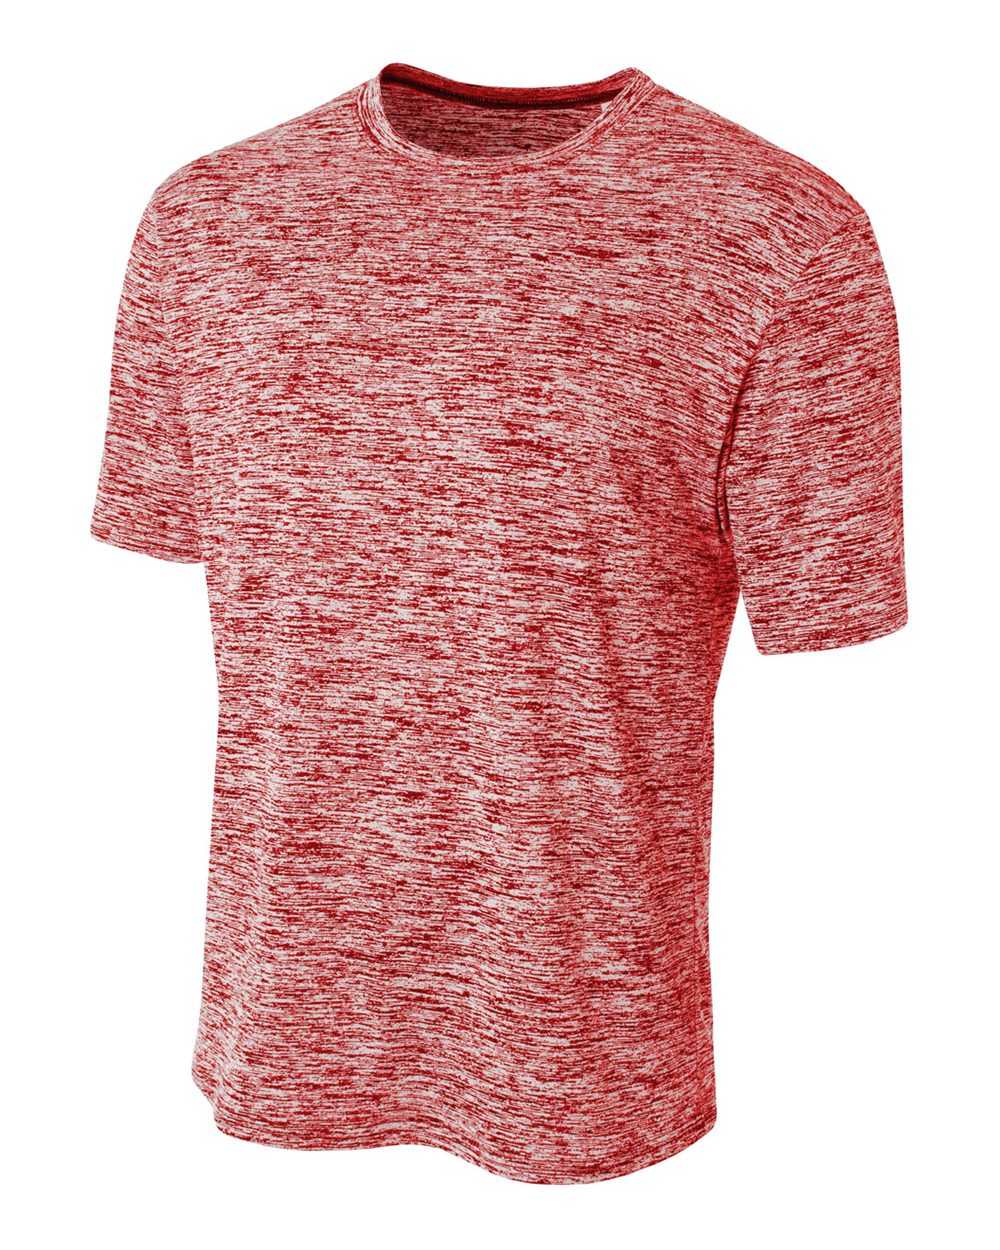 A4 N3296 Space Dye Tech Shirt - Scarlet - HIT a Double